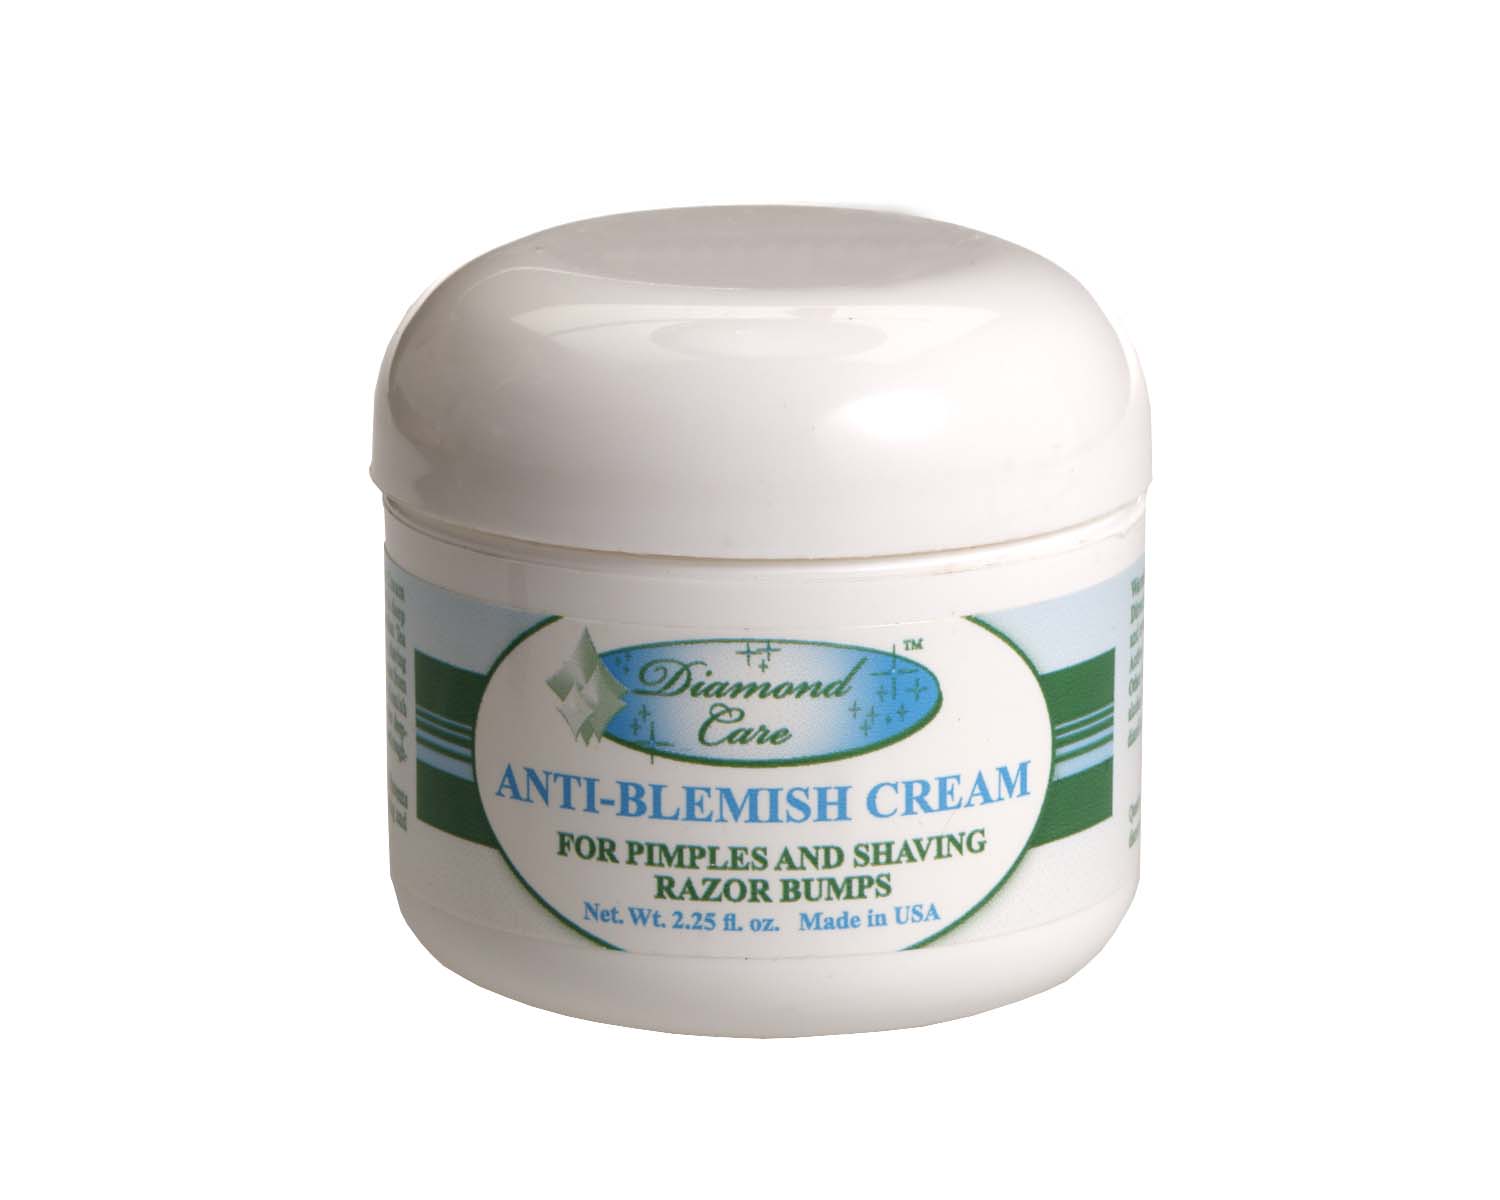 Anti-Blemish Cream